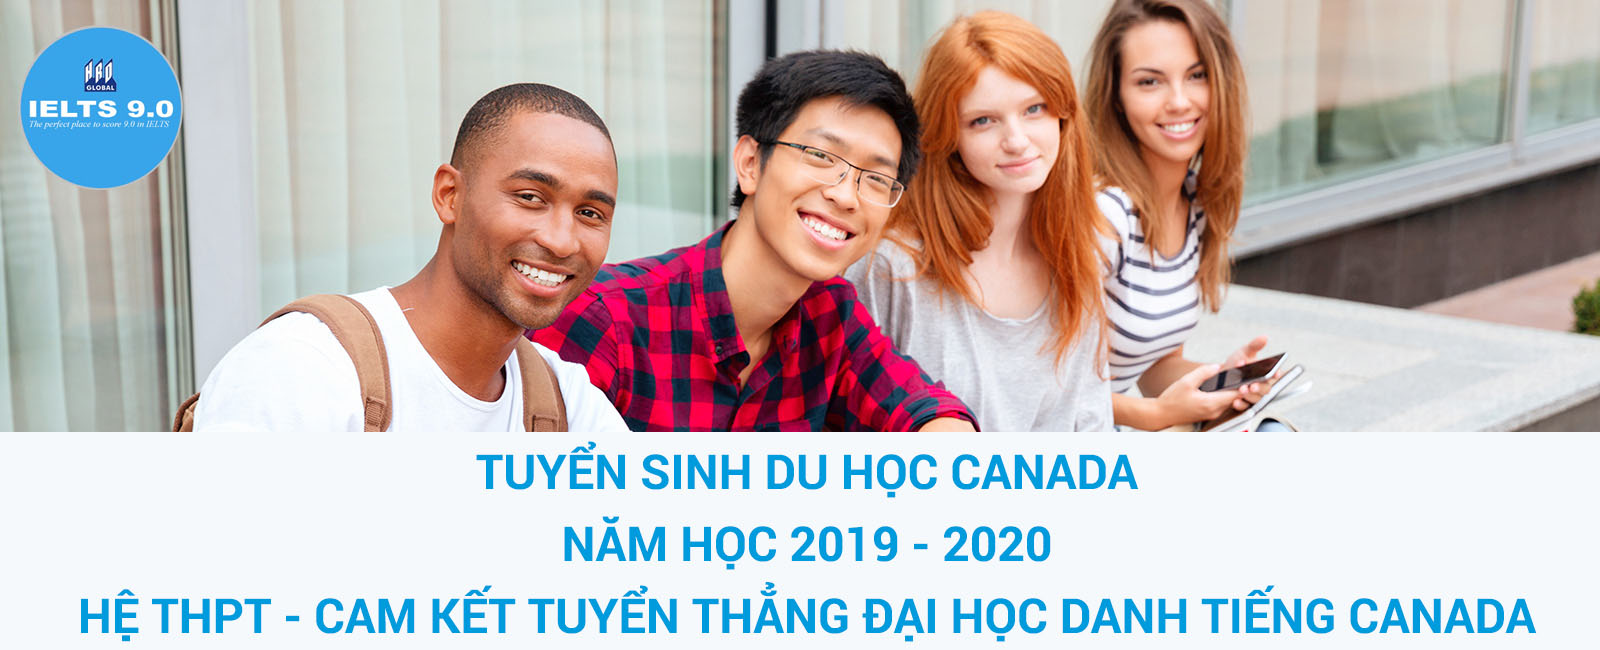 Tuyển sinh du hoc Canada năm học 2019 - 2020 trường THPT UTPA